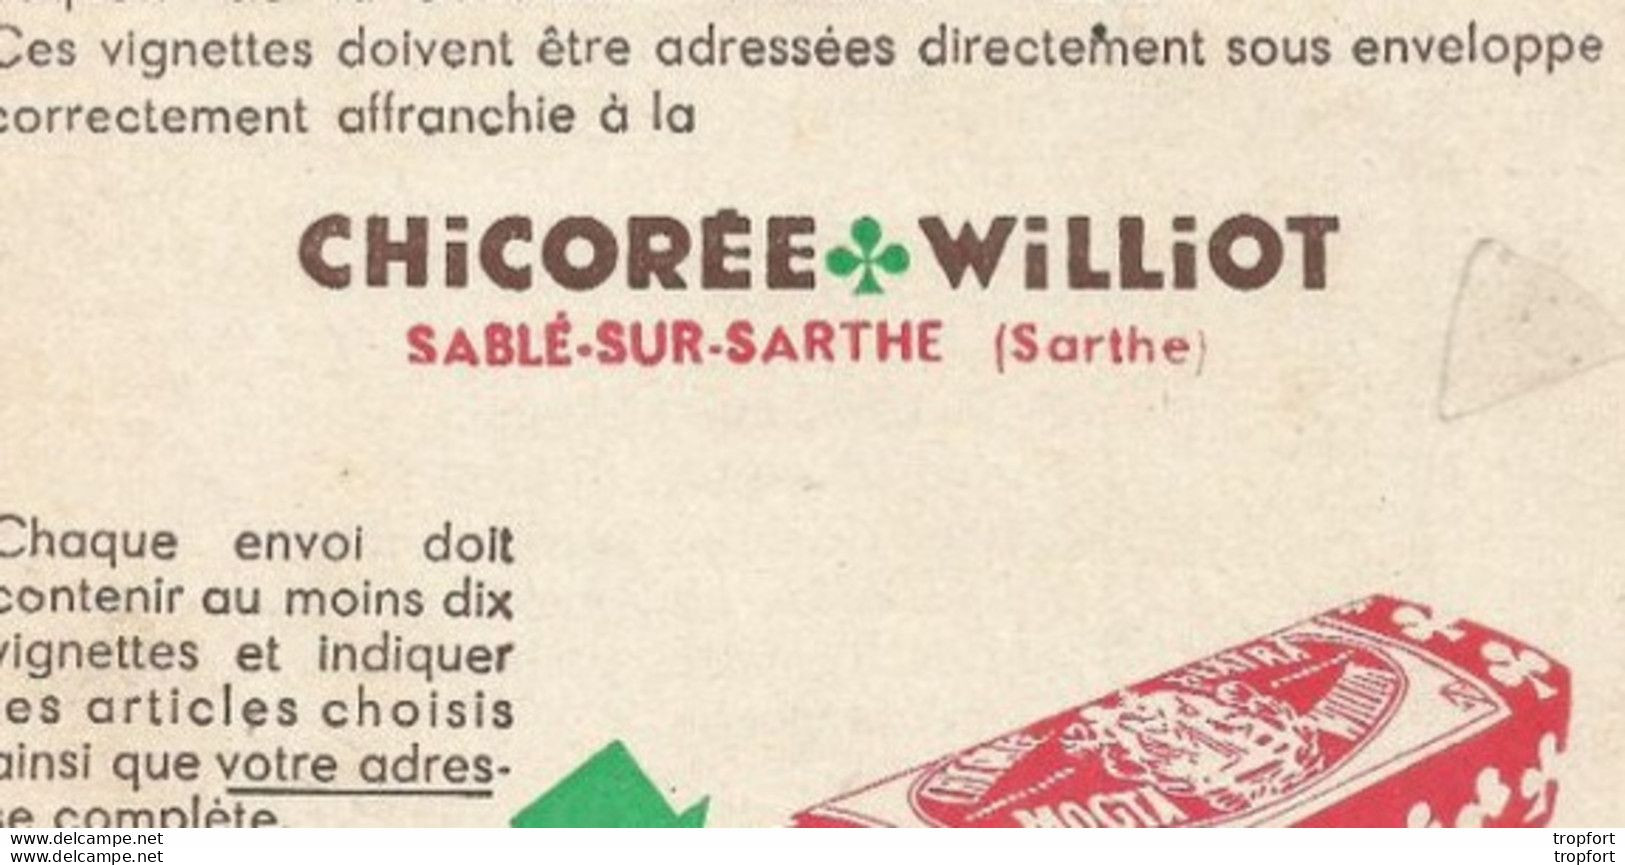 Vintage / Rare Publicité Affichette Publicitaire Sable Sur SARTHE Chicorée WILLIOT - Publicités